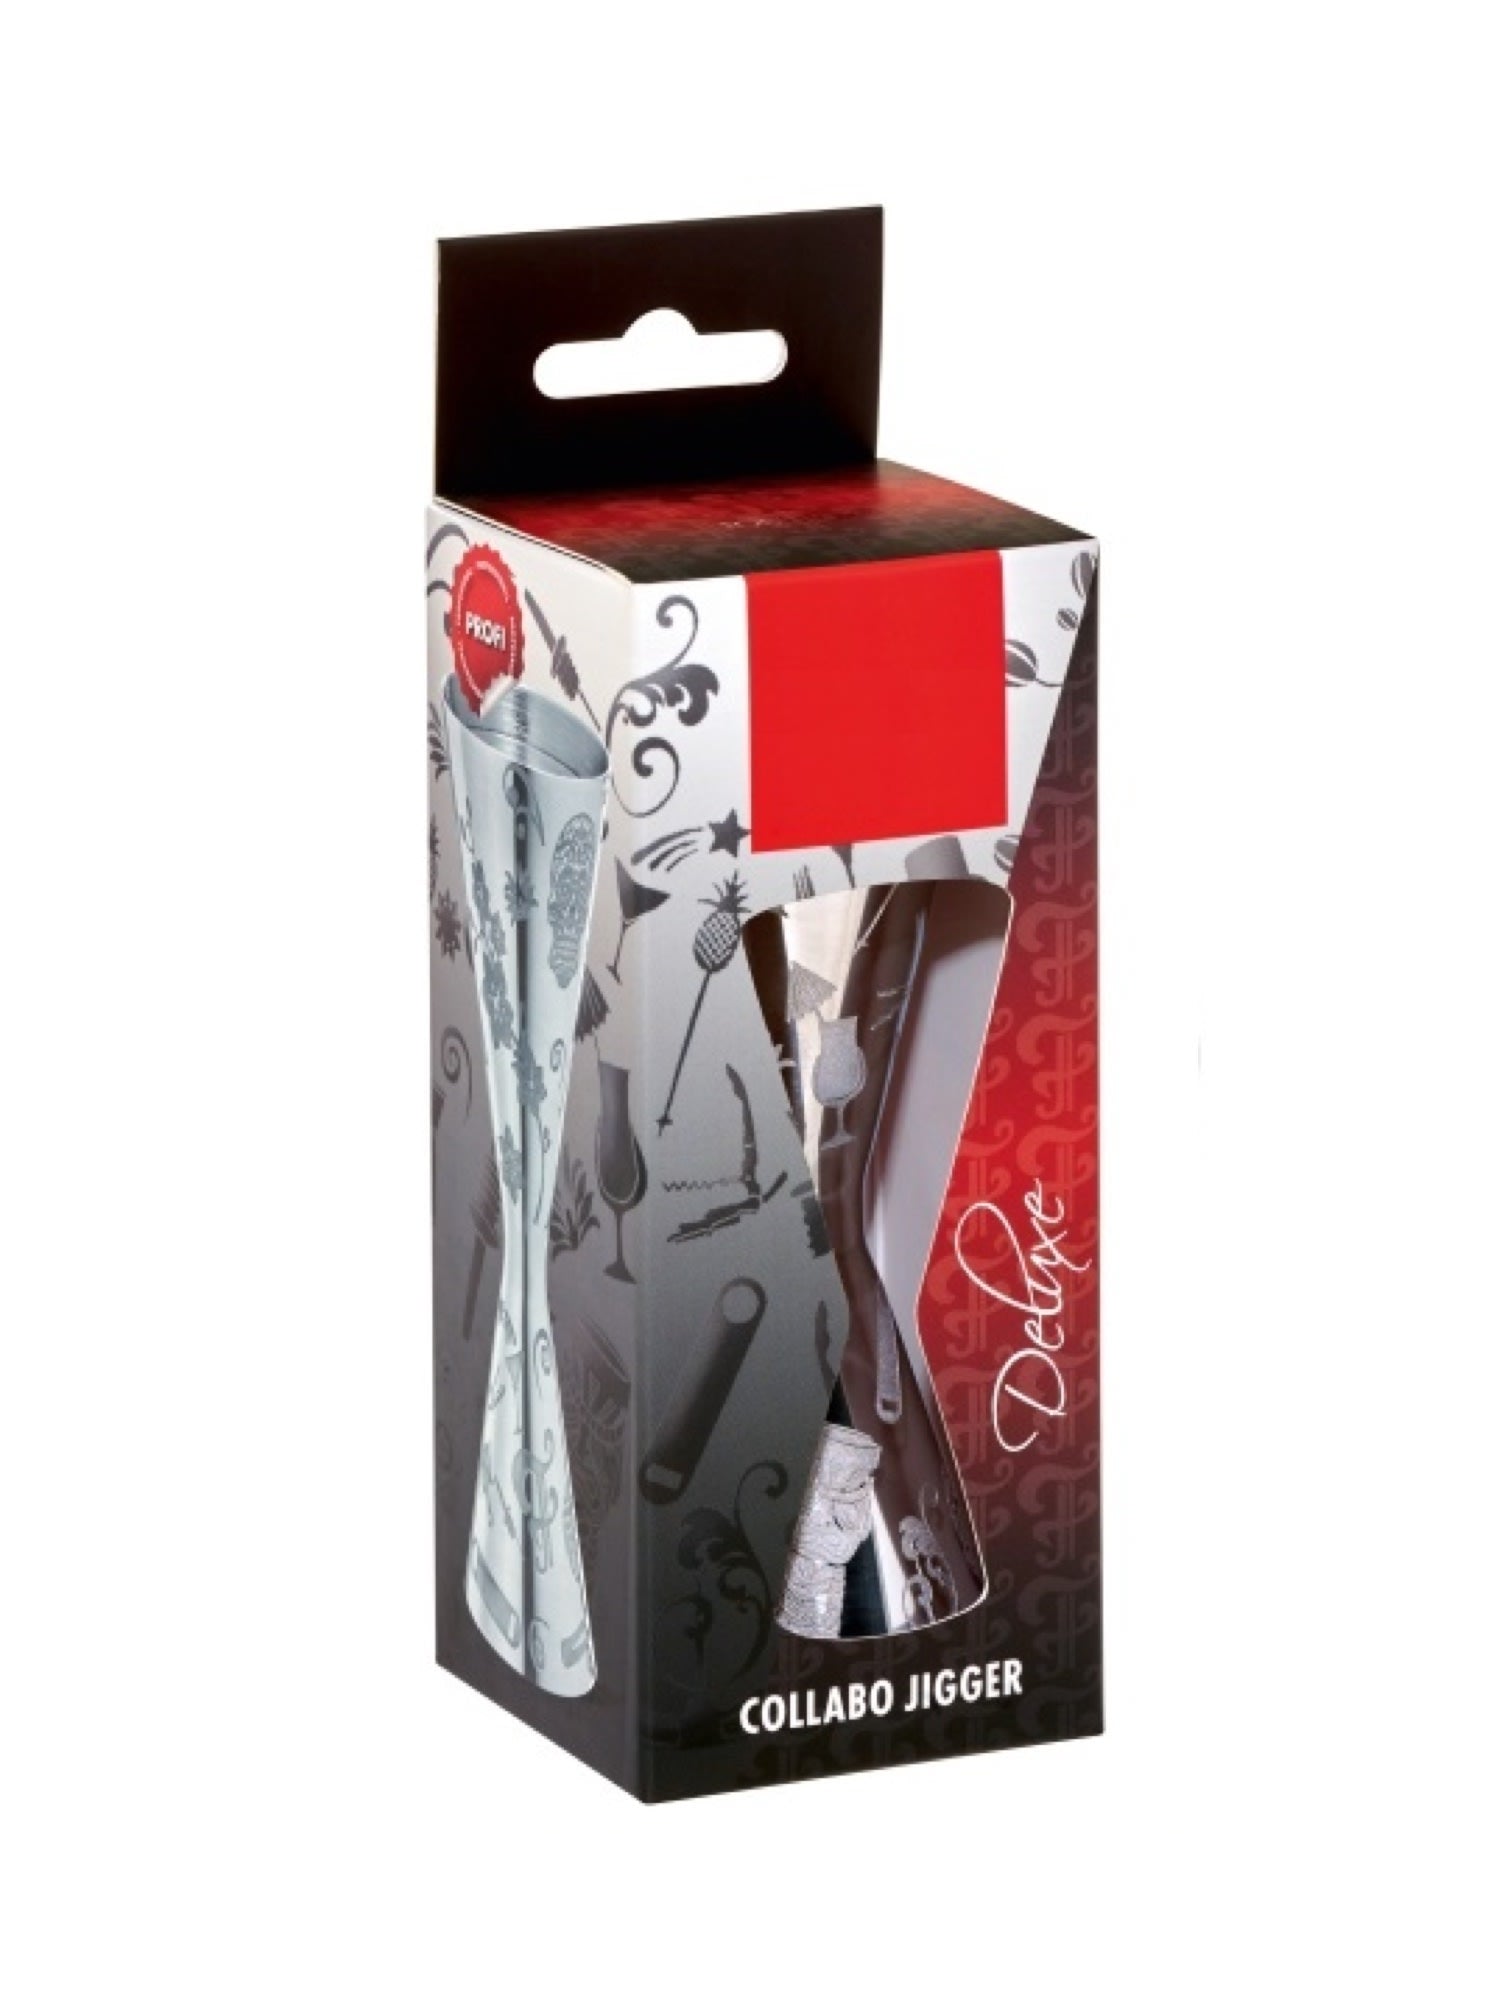 Collabo Classic Jigger - En klassisk jigger med Collabo-logoet, perfekt til præcis måling af spiritus til cocktails.